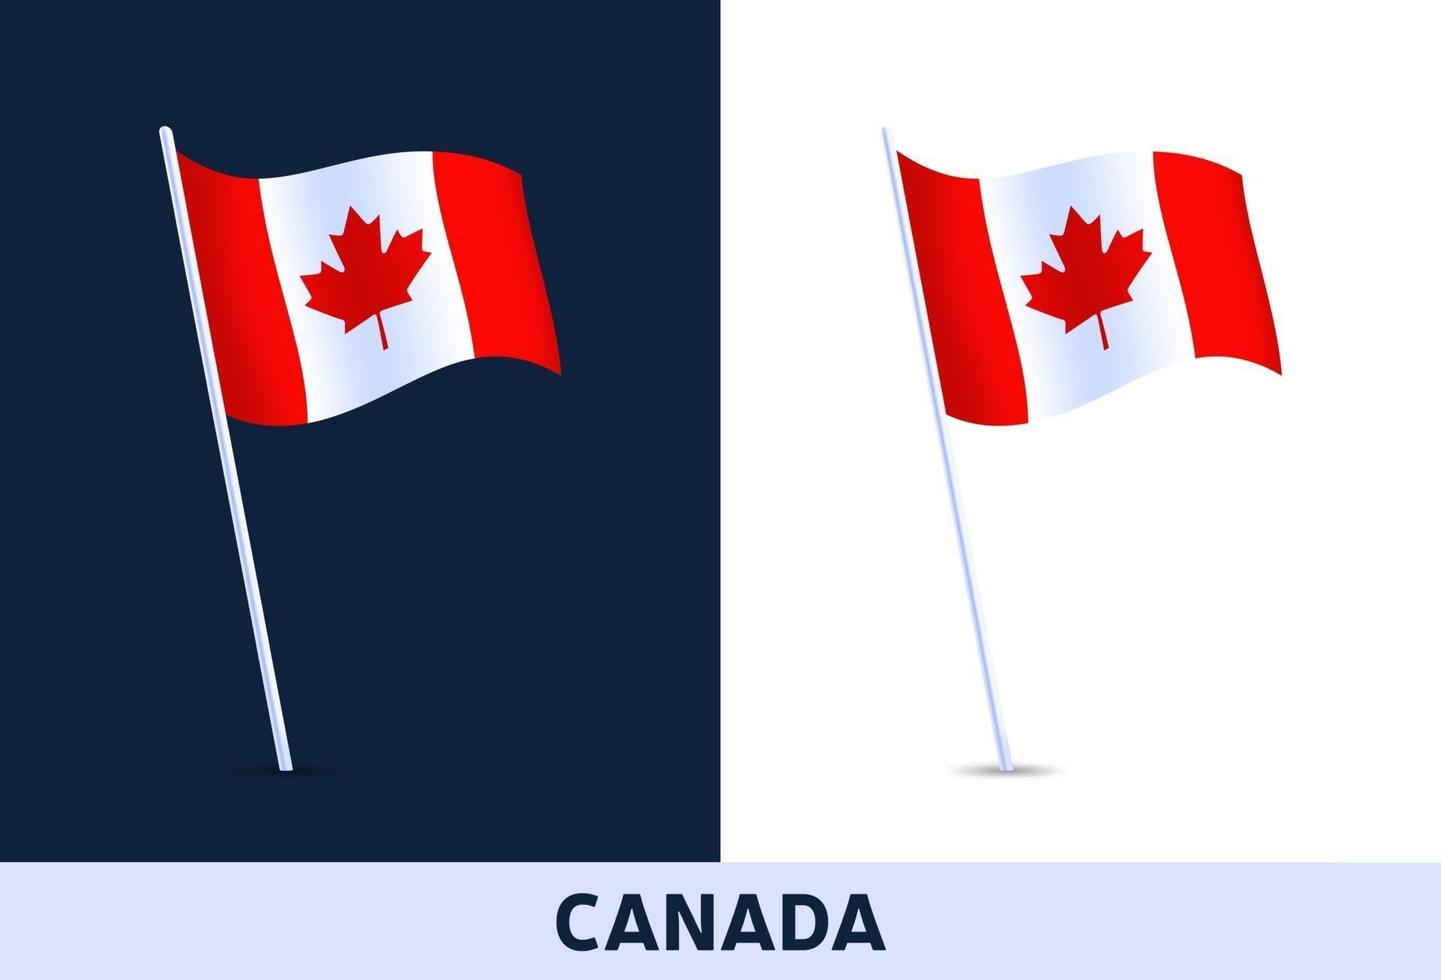 Kanada Vektor Flagge. winkende Nationalflagge von Italien lokalisiert auf weißem und dunklem Hintergrund. offizielle Farben und Anteil der Flagge. Vektorillustration.